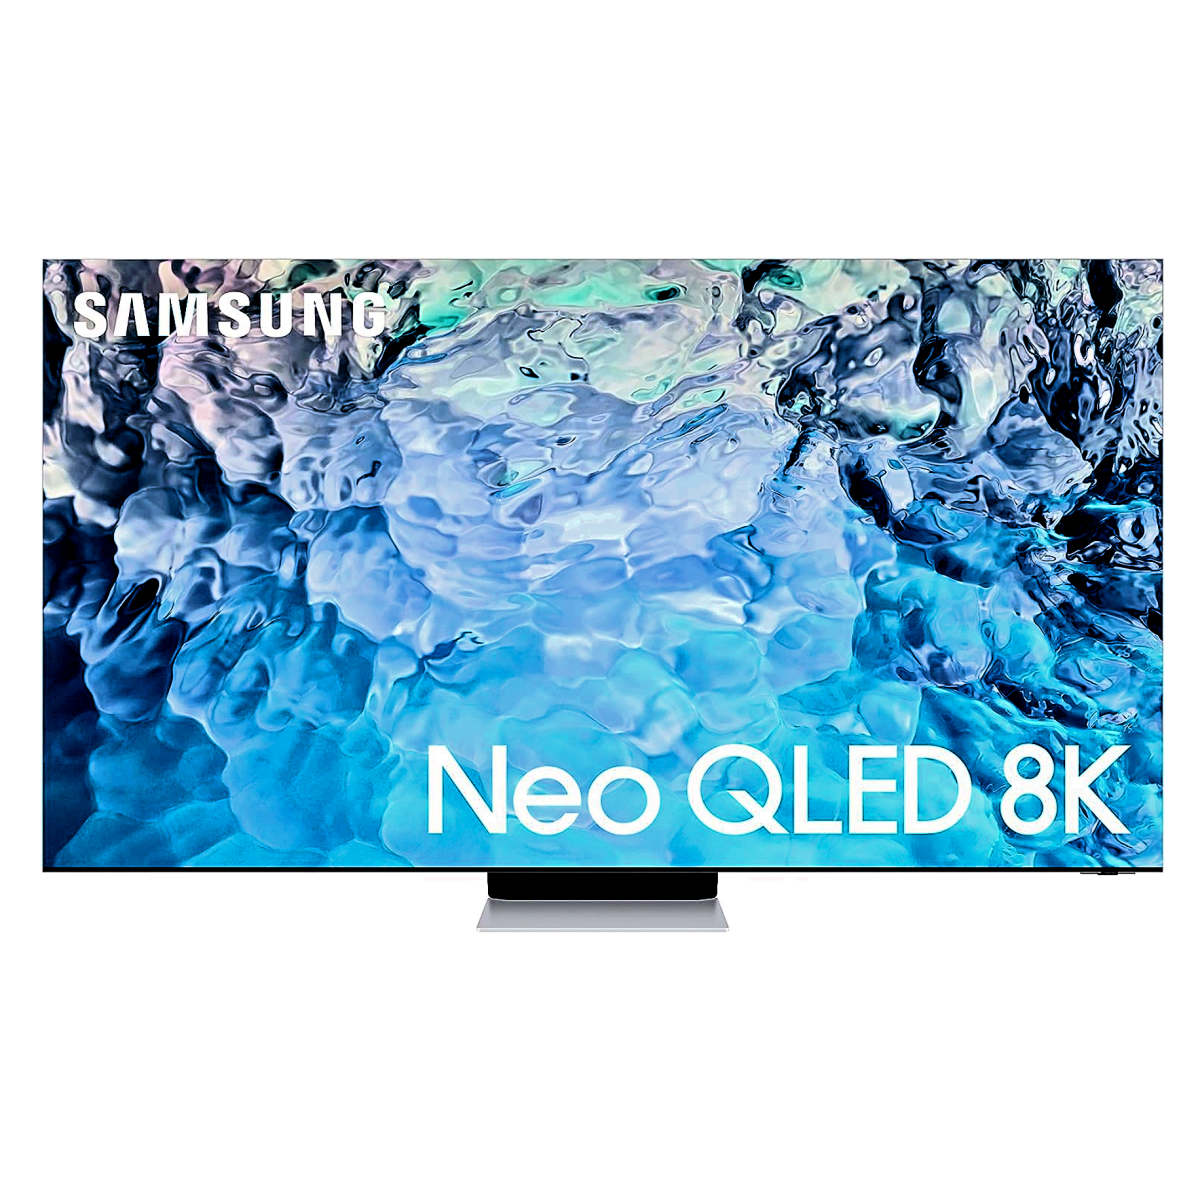 A Samsung QN900B QLED TV